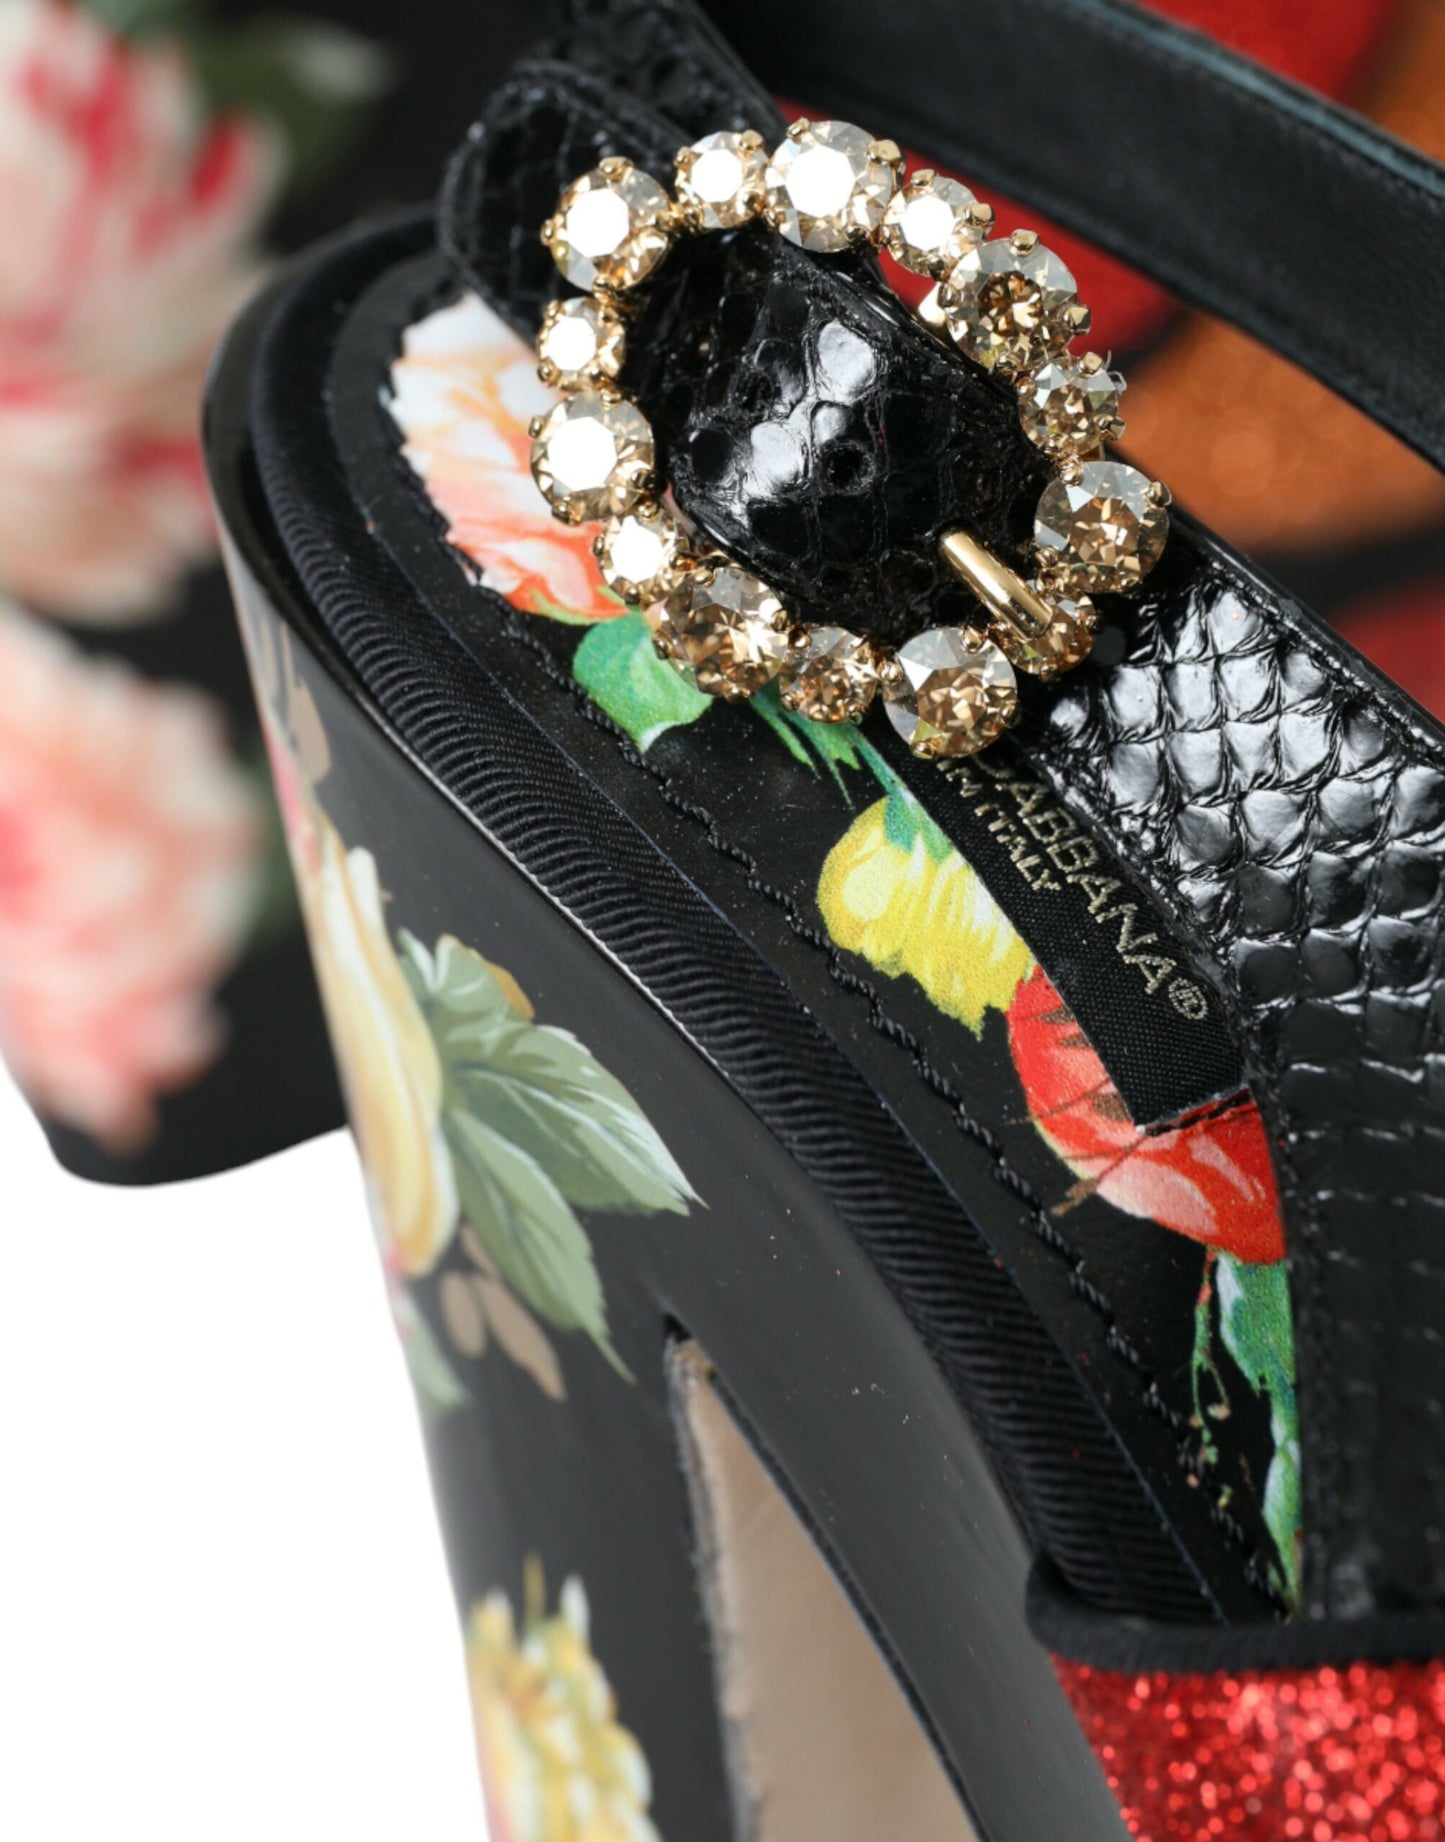 حذاء دولتشي آند غابانا متعدد الألوان ذو نعل سميك مزين بالكريستال